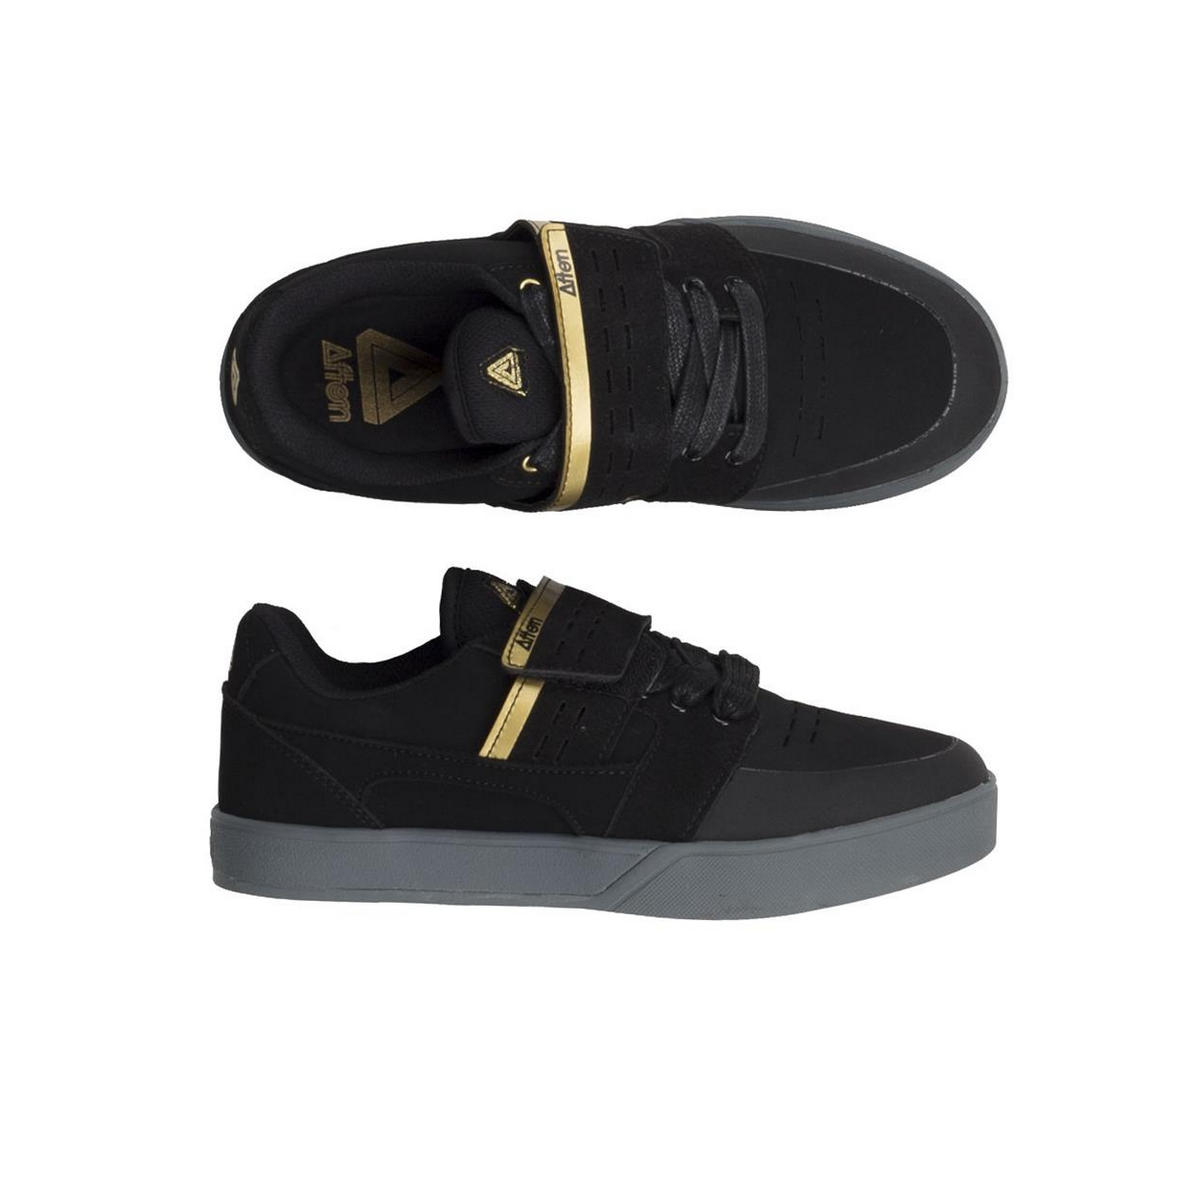 MTB Shoes Vectal SPD Black/Gold Size 40